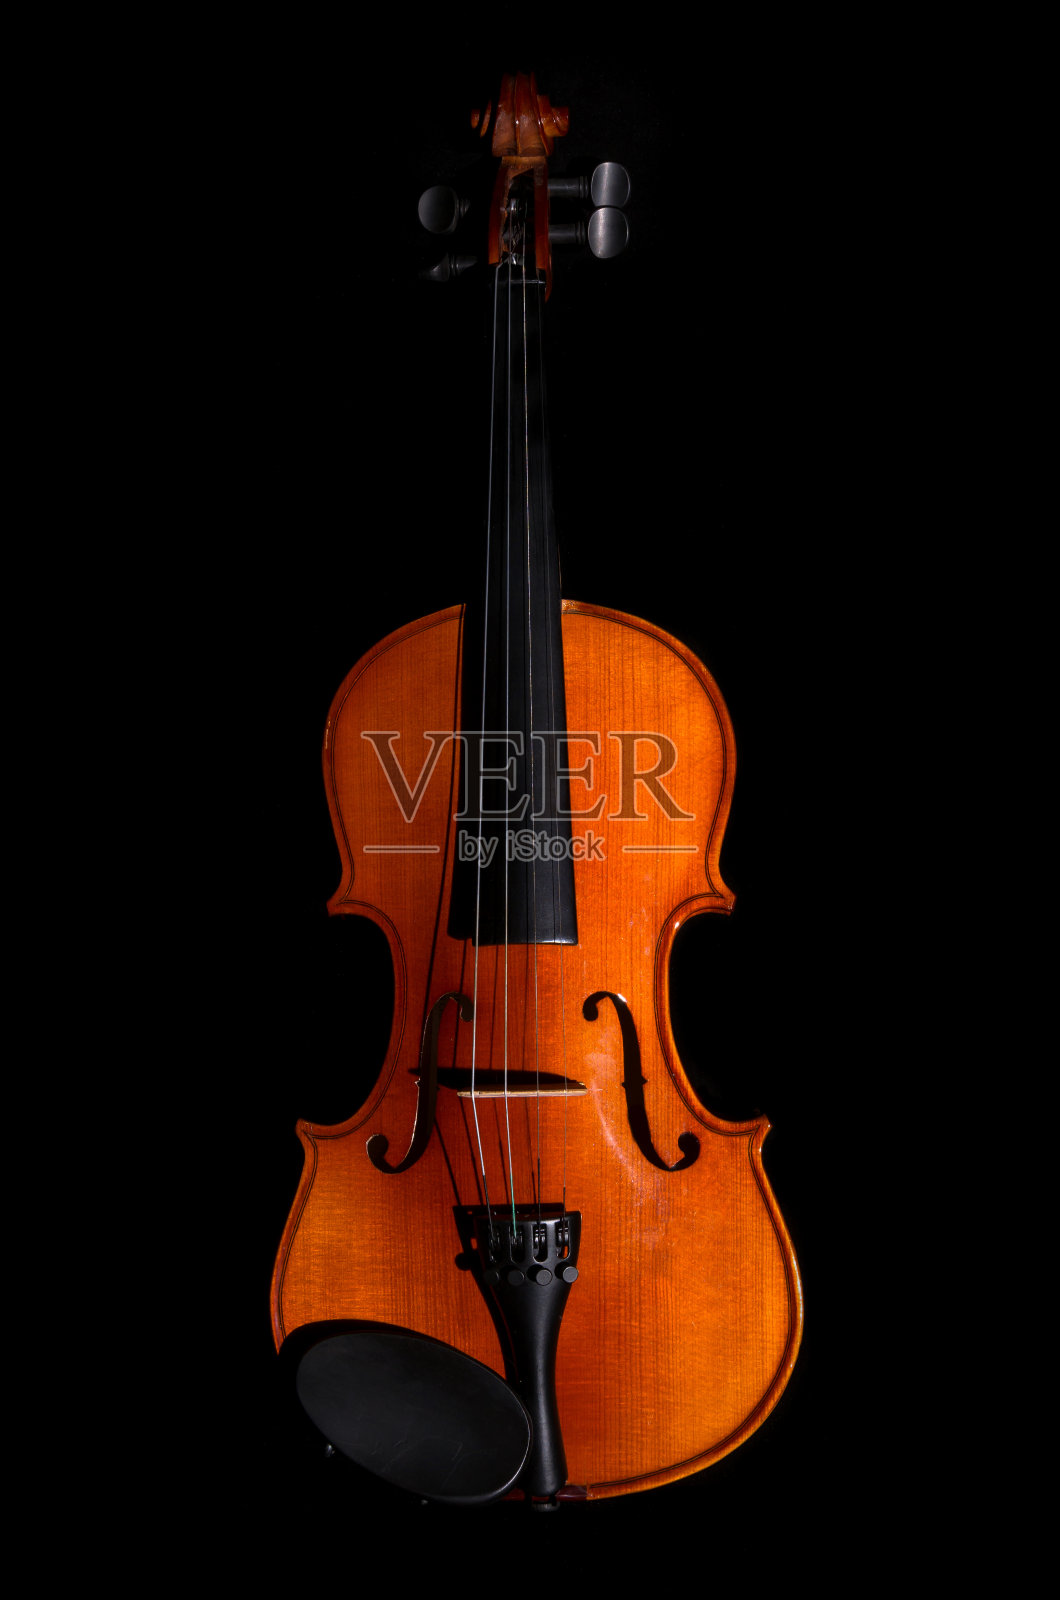 黑色背景上的小提琴管弦乐队乐器照片摄影图片